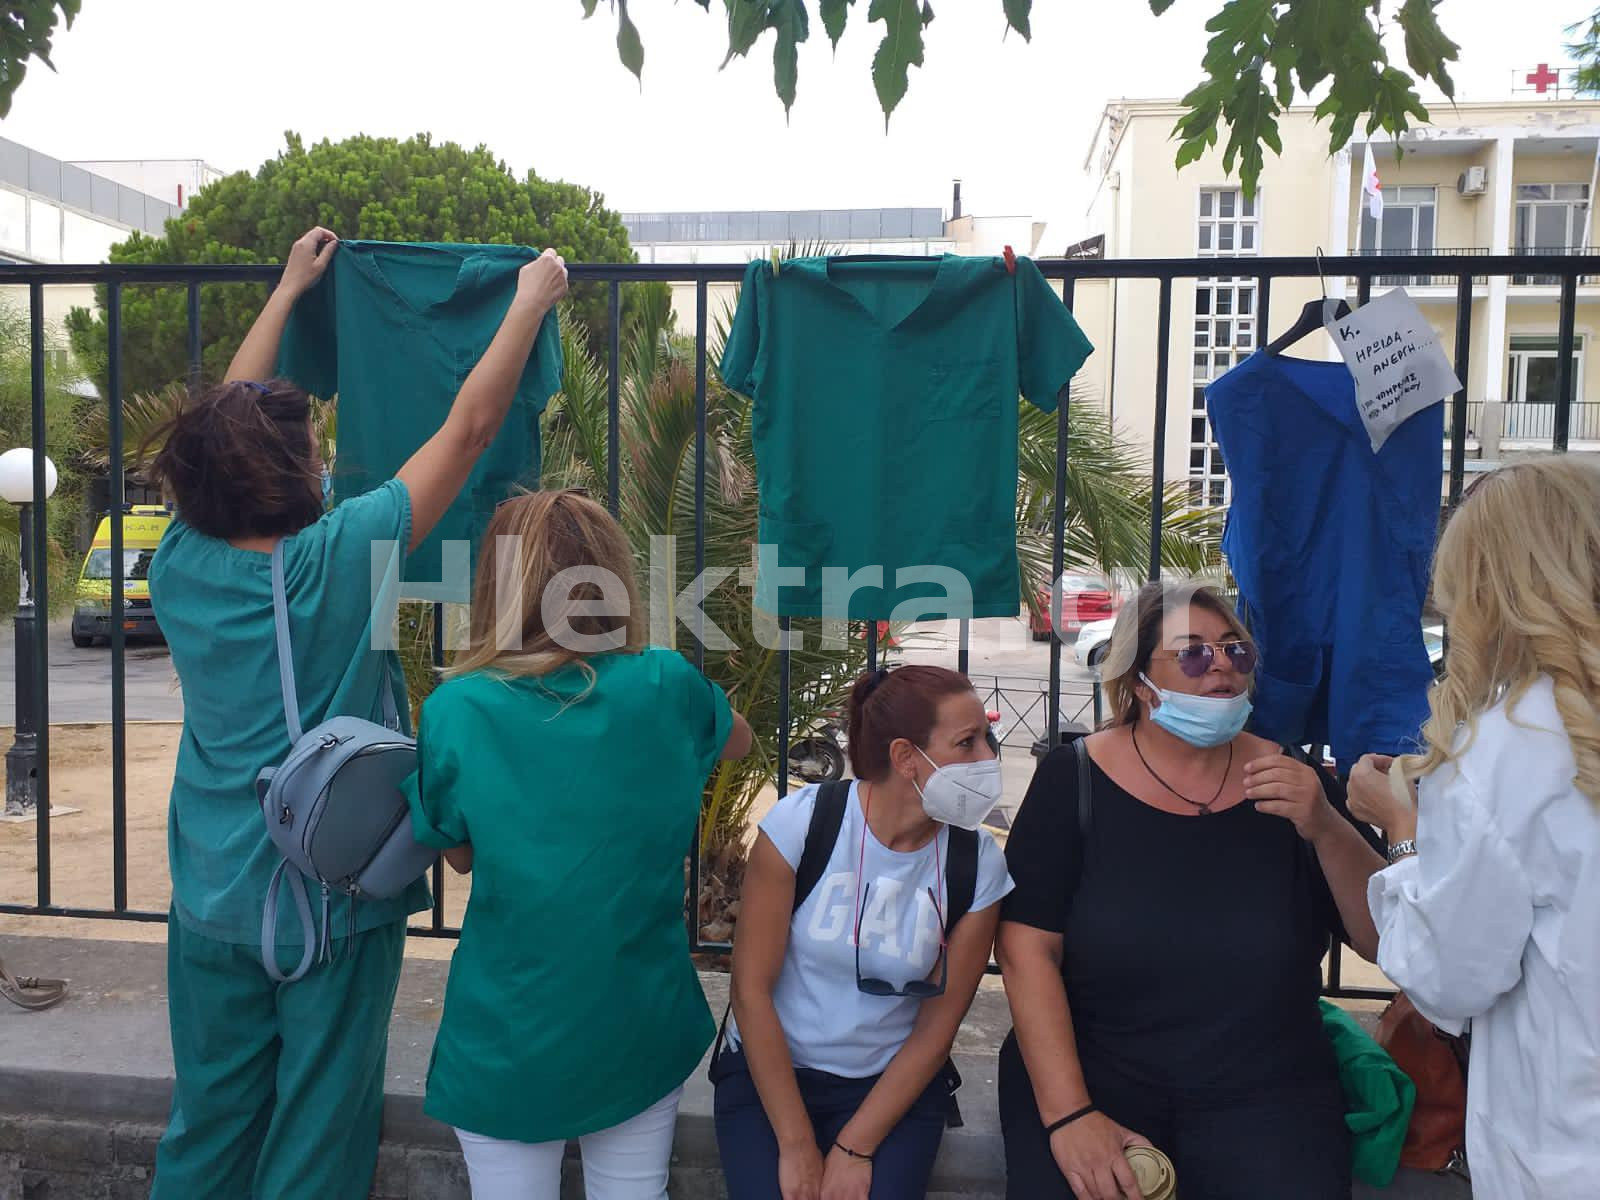 Κόρινθος: Διαμαρτυρία υγειονομικών ενάντια στον υποχρεωτικό εμβολιασμό (εικόνες & βίντεο) - ΚΟΡΙΝΘΙΑ